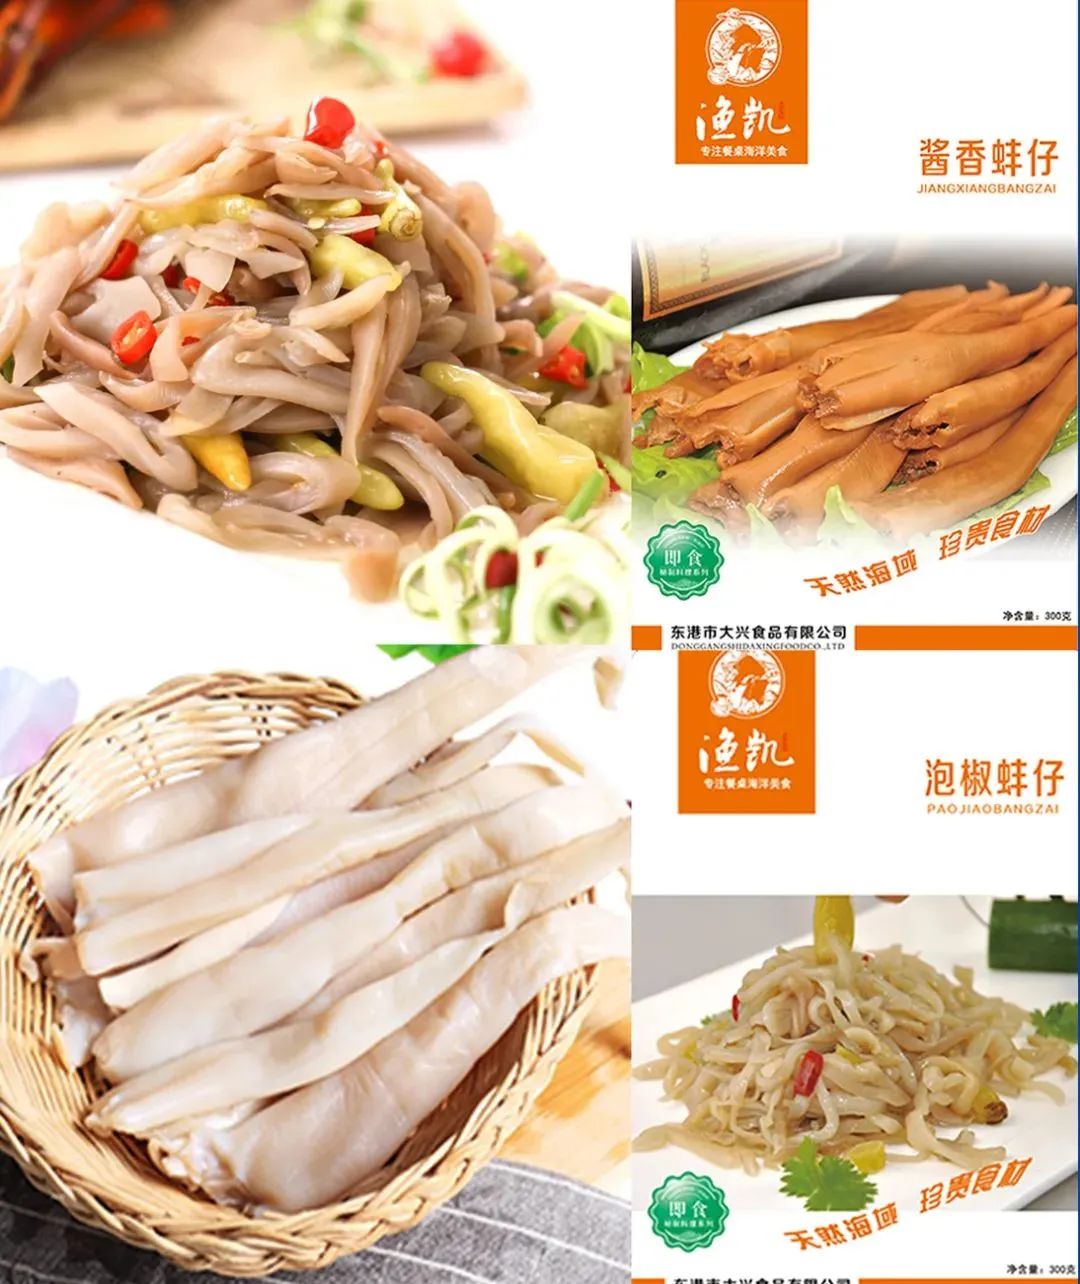 东港市大兴食品有限公司——专注餐桌海洋美食(图3)